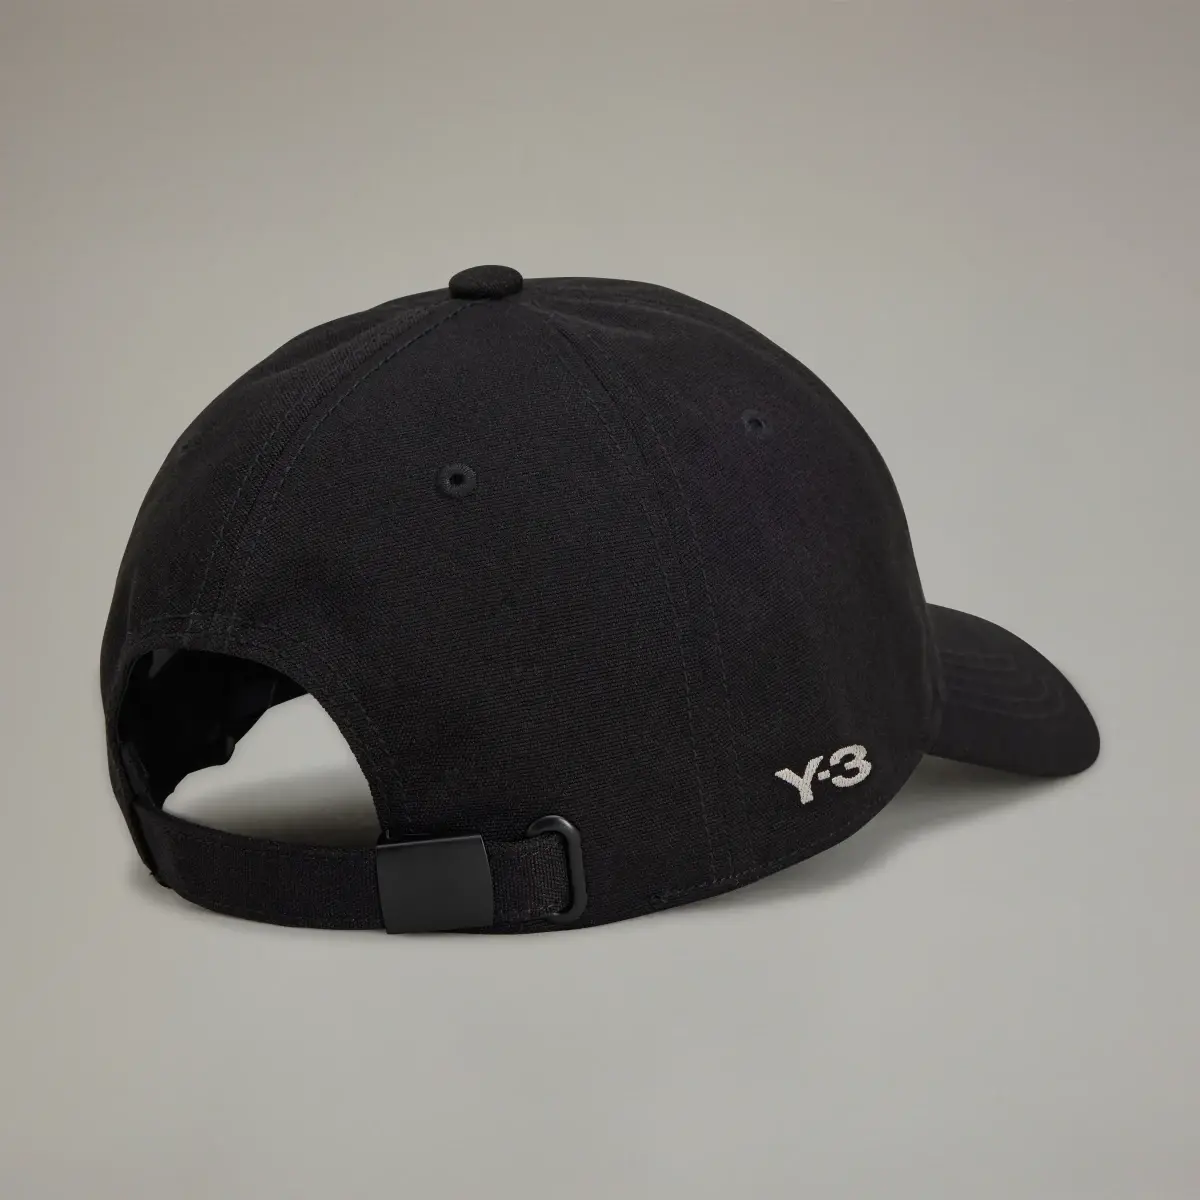 Adidas Y-3 MORPHED CAP. 3